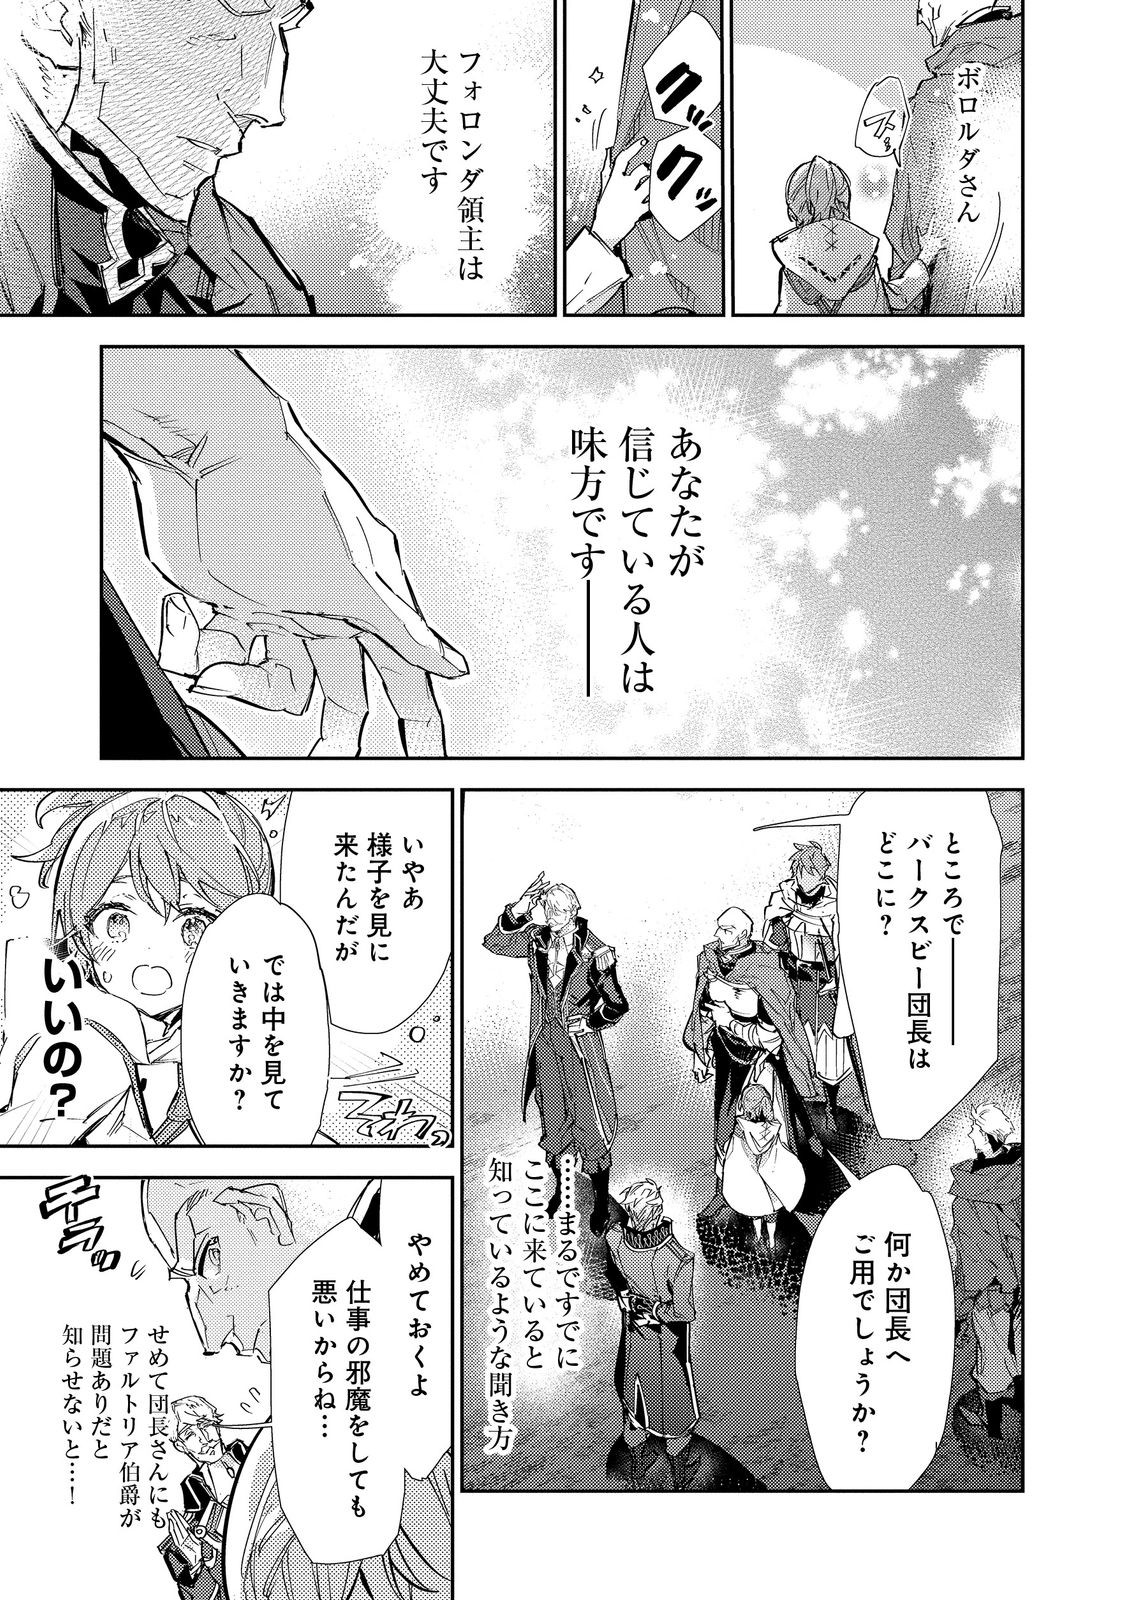 Saijaku Teima wa Gomi Hiroi no Tabi o Hajimemashita - Chapter 21 - Page 3